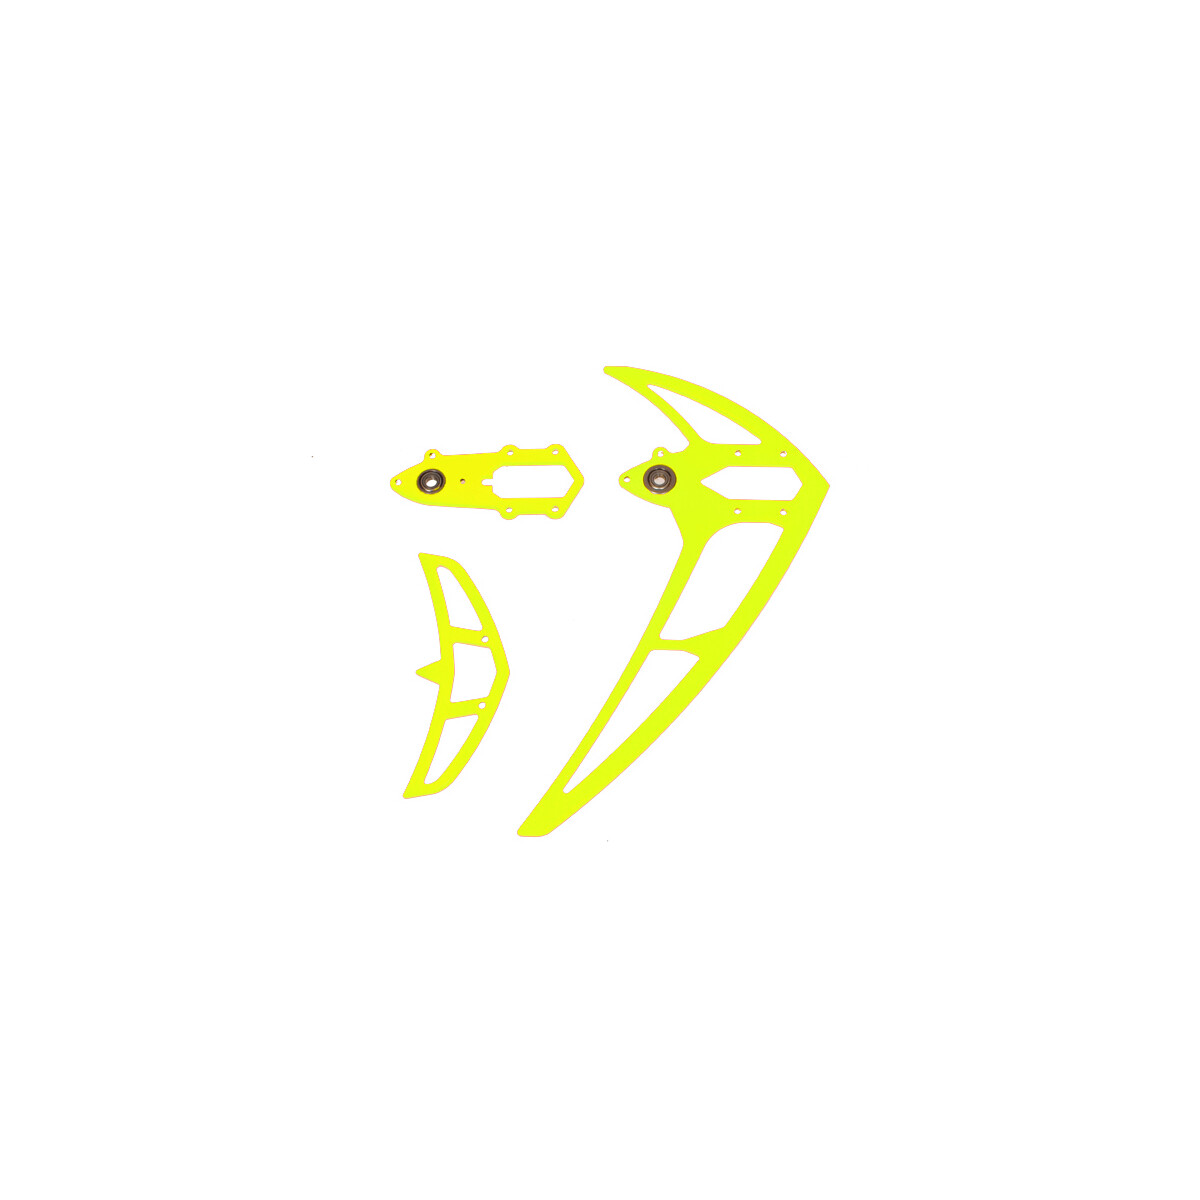 Leitwerkssatz, neon gelb , LOGO 600